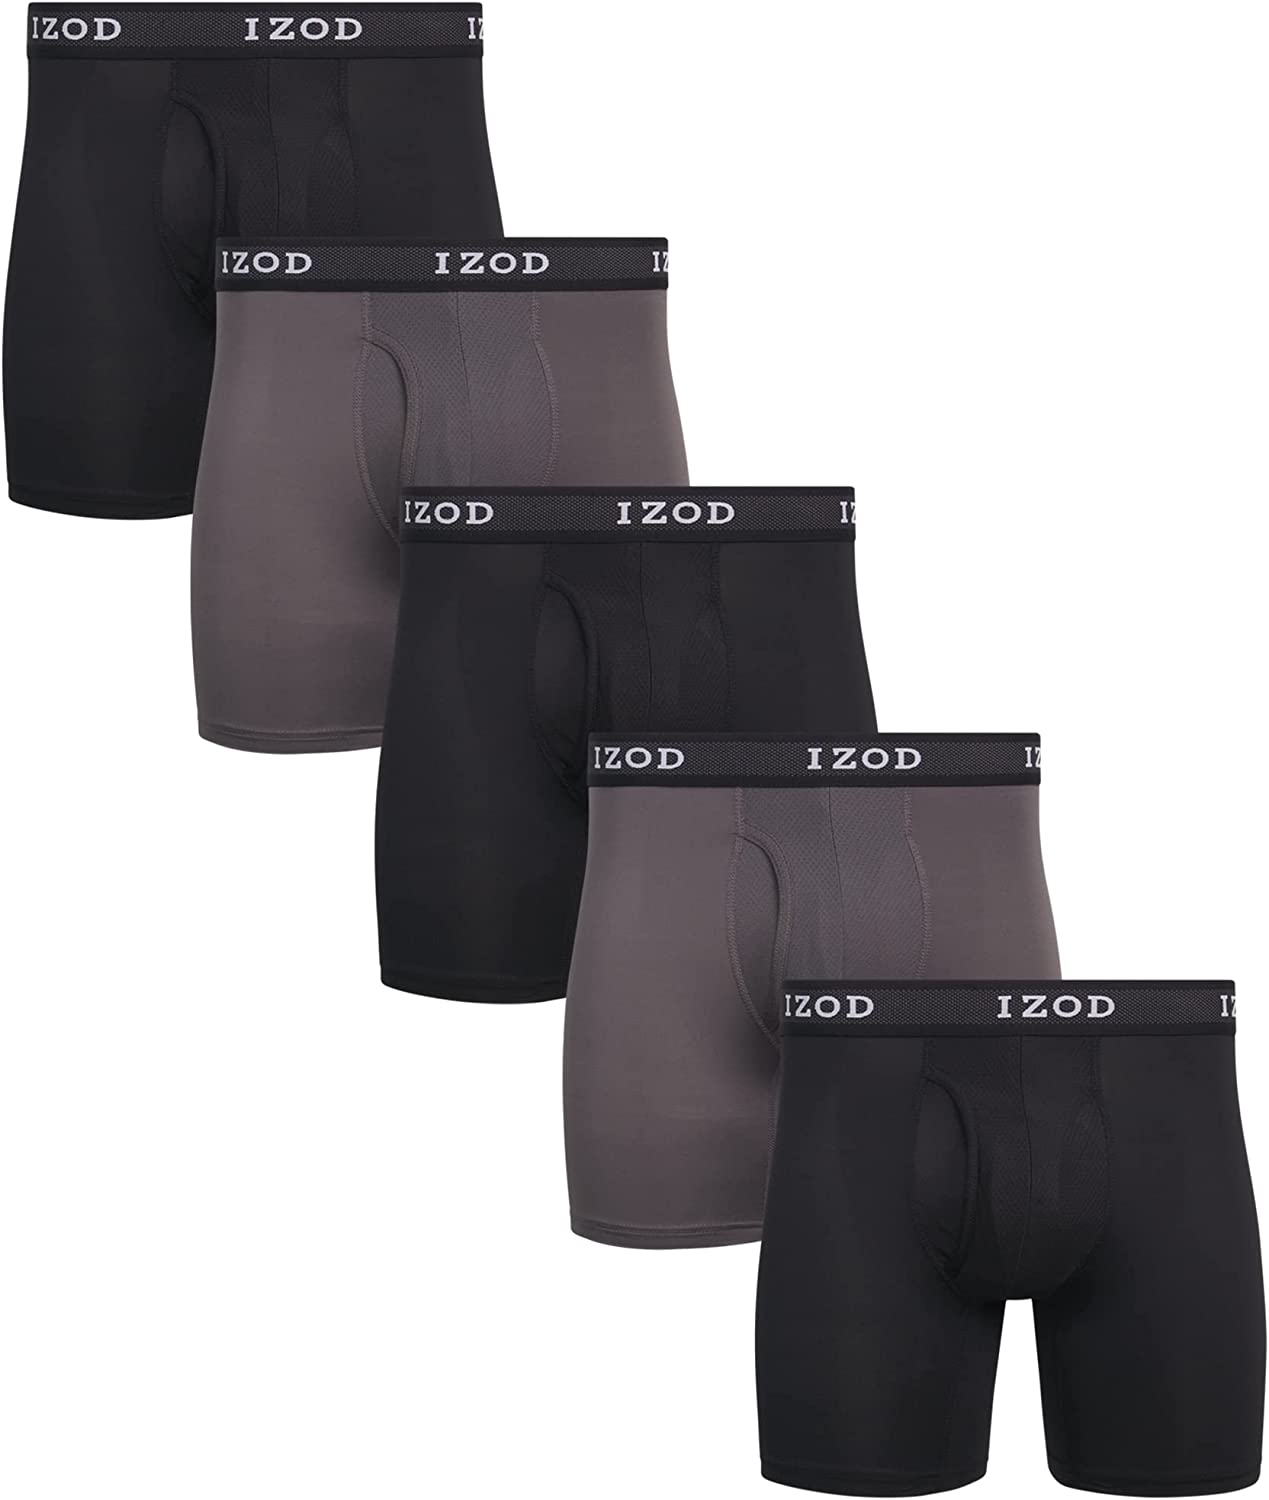 IZOD Men's Underwear - Performance Boxer Briefs with Mesh